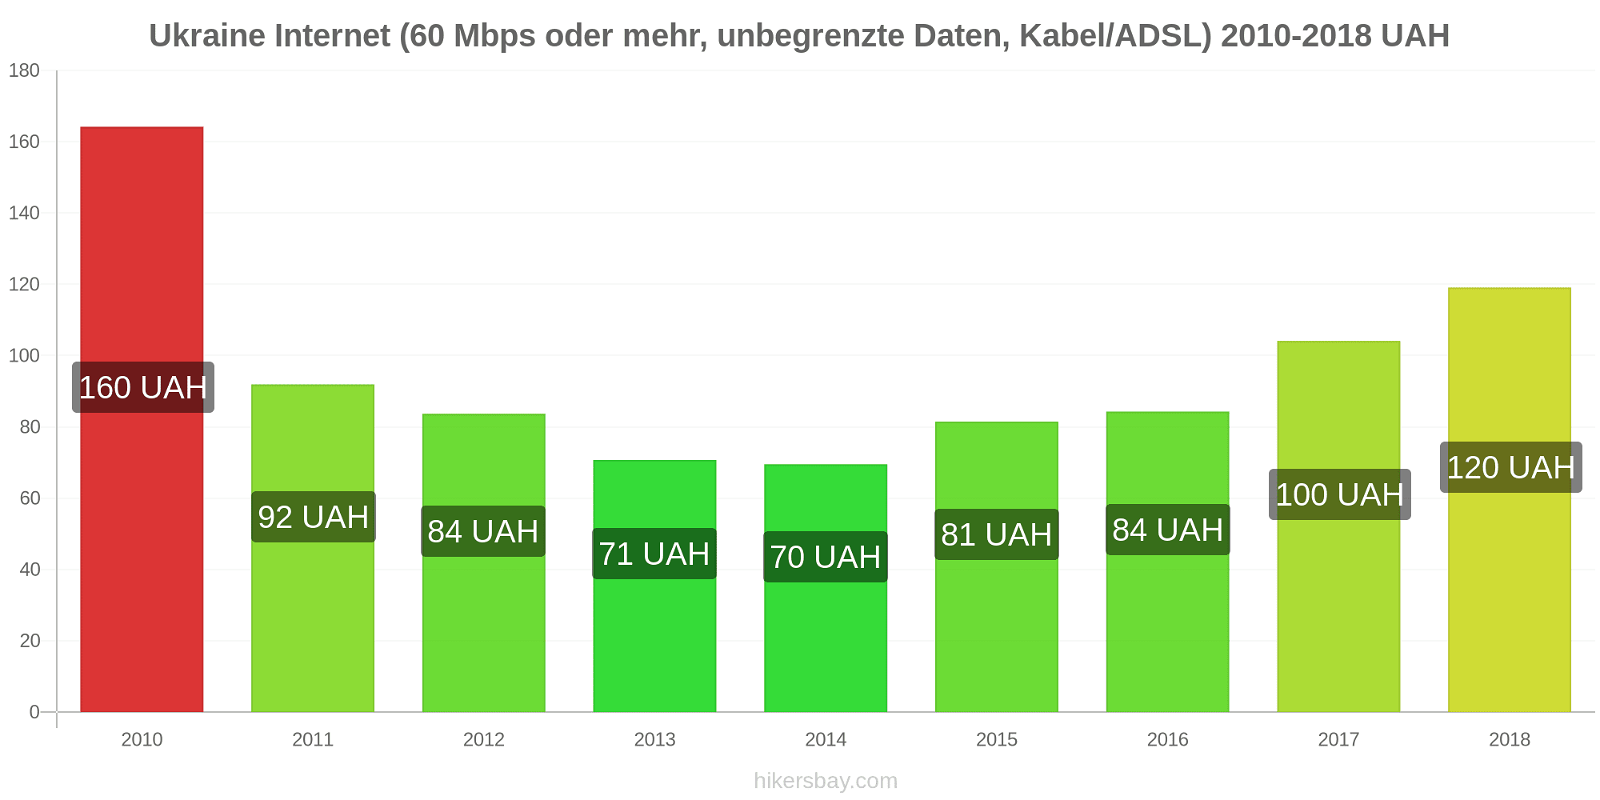 Ukraine Preisänderungen Internet (60 Mbps oder mehr, unbegrenzte Daten, Kabel/ADSL) hikersbay.com